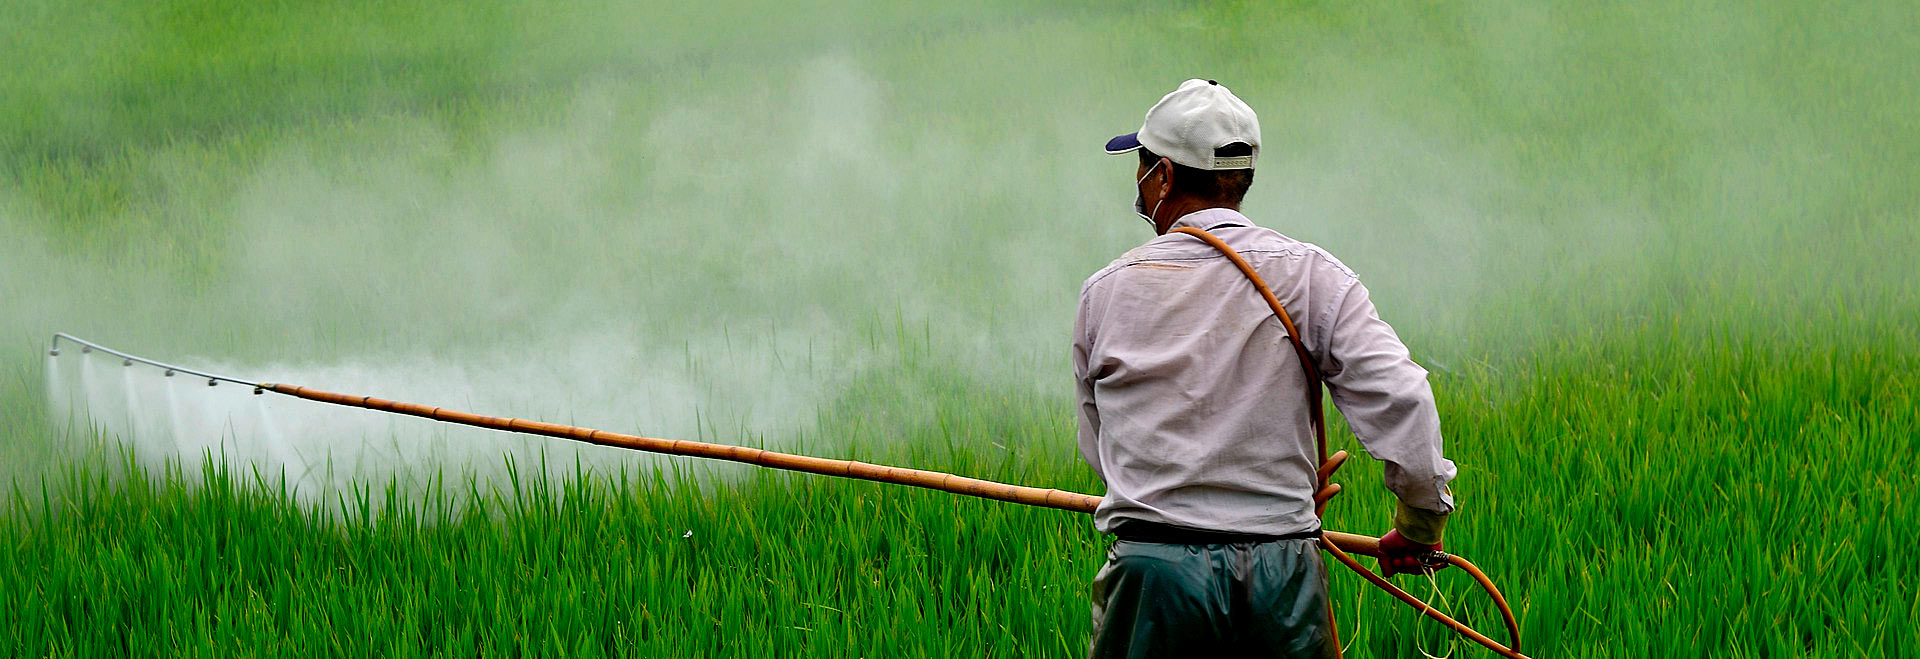 Foto de um homem aplicando herbicida em uma plantação. Ele aparece de costas, usa calça escura, camisa clara e boné.